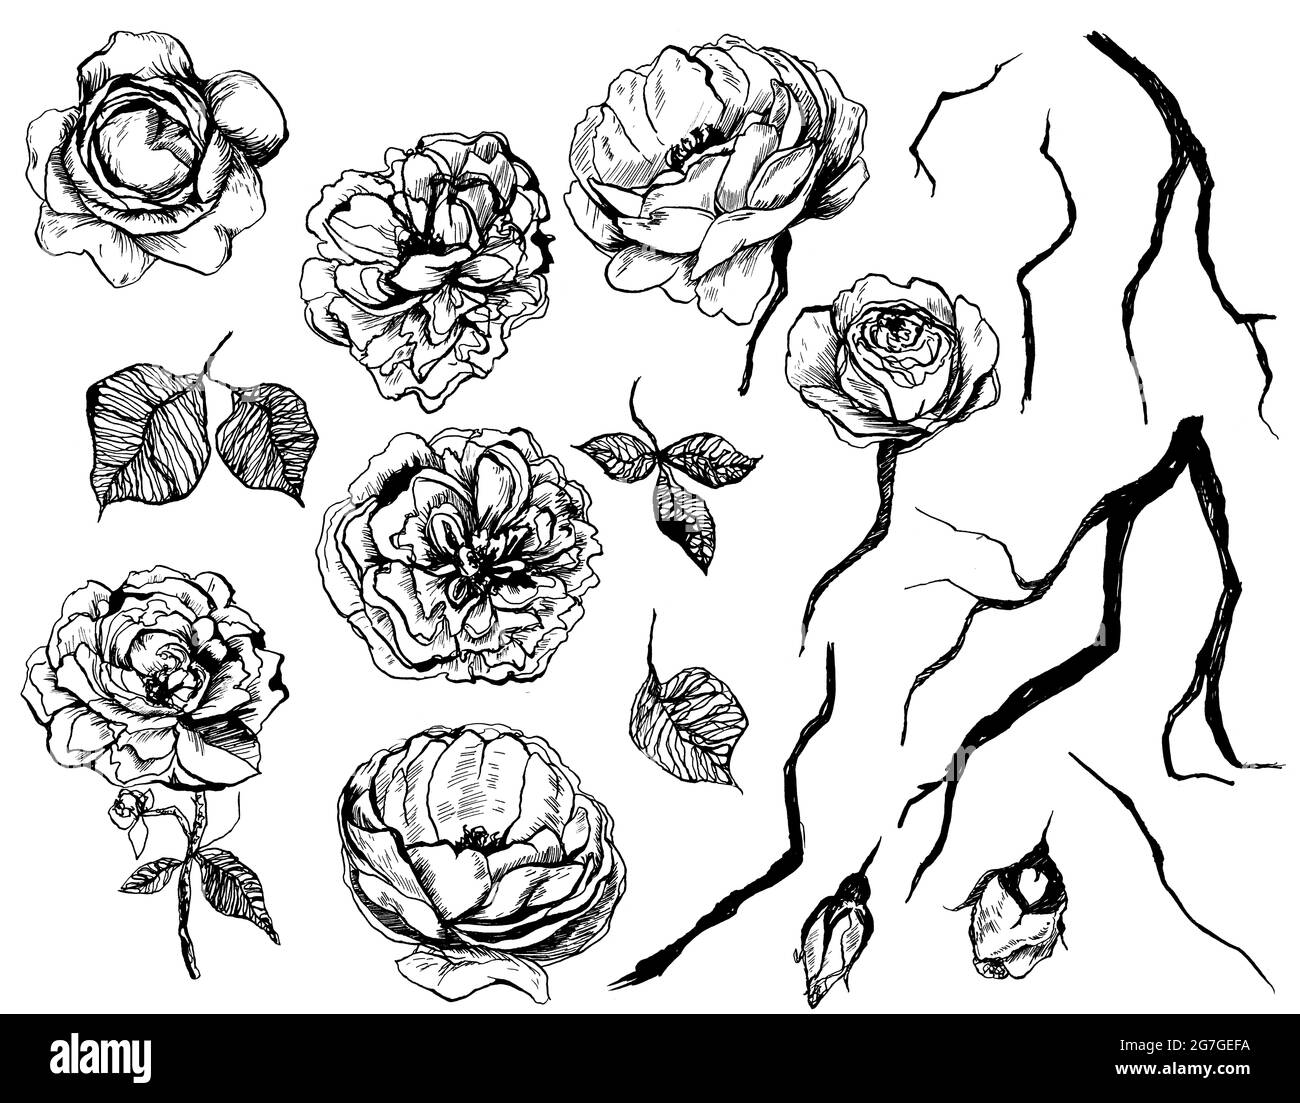 Ensemble de fleurs graphiques dessinées à la main avec roses, feuilles et brindilles. Éléments isolés sur fond blanc Banque D'Images